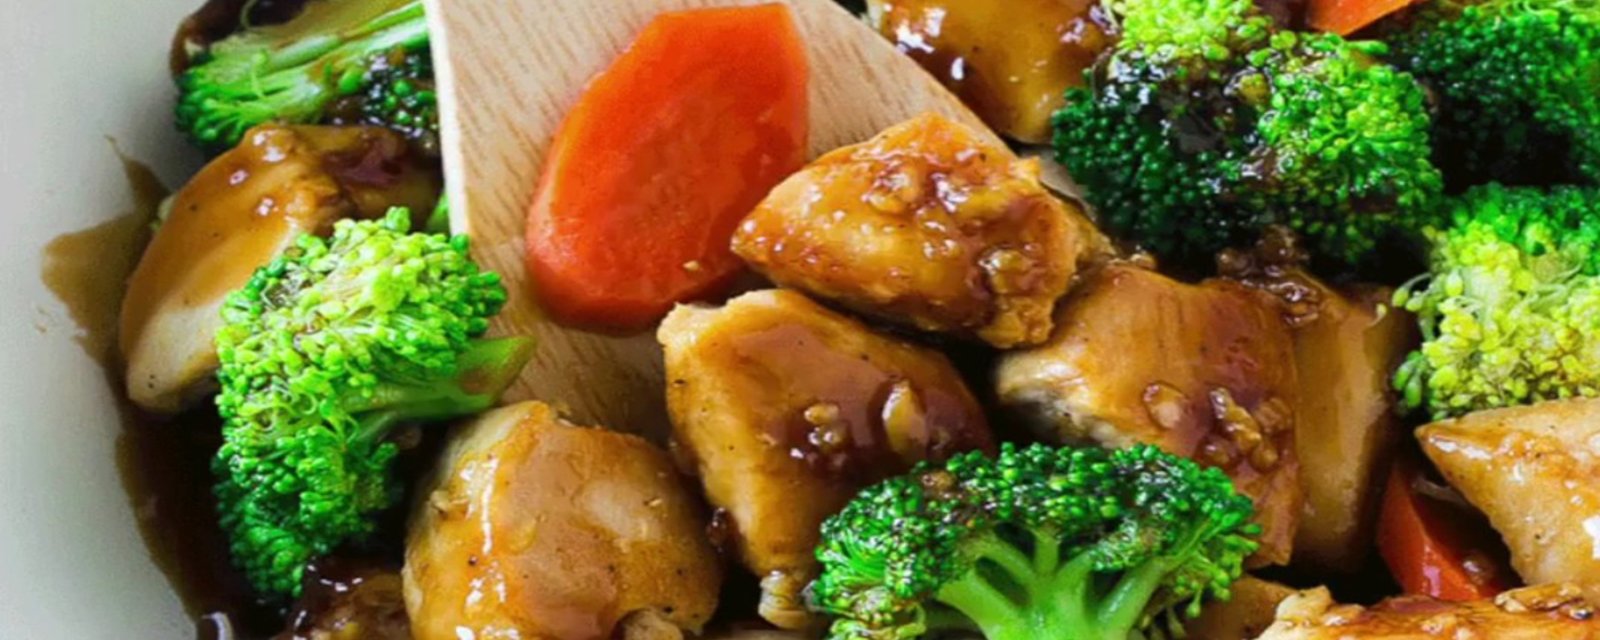 Servez un sauté de poulet miel &amp; ail  pour le souper! Un repas simple, facile et DÉLICIEUX!